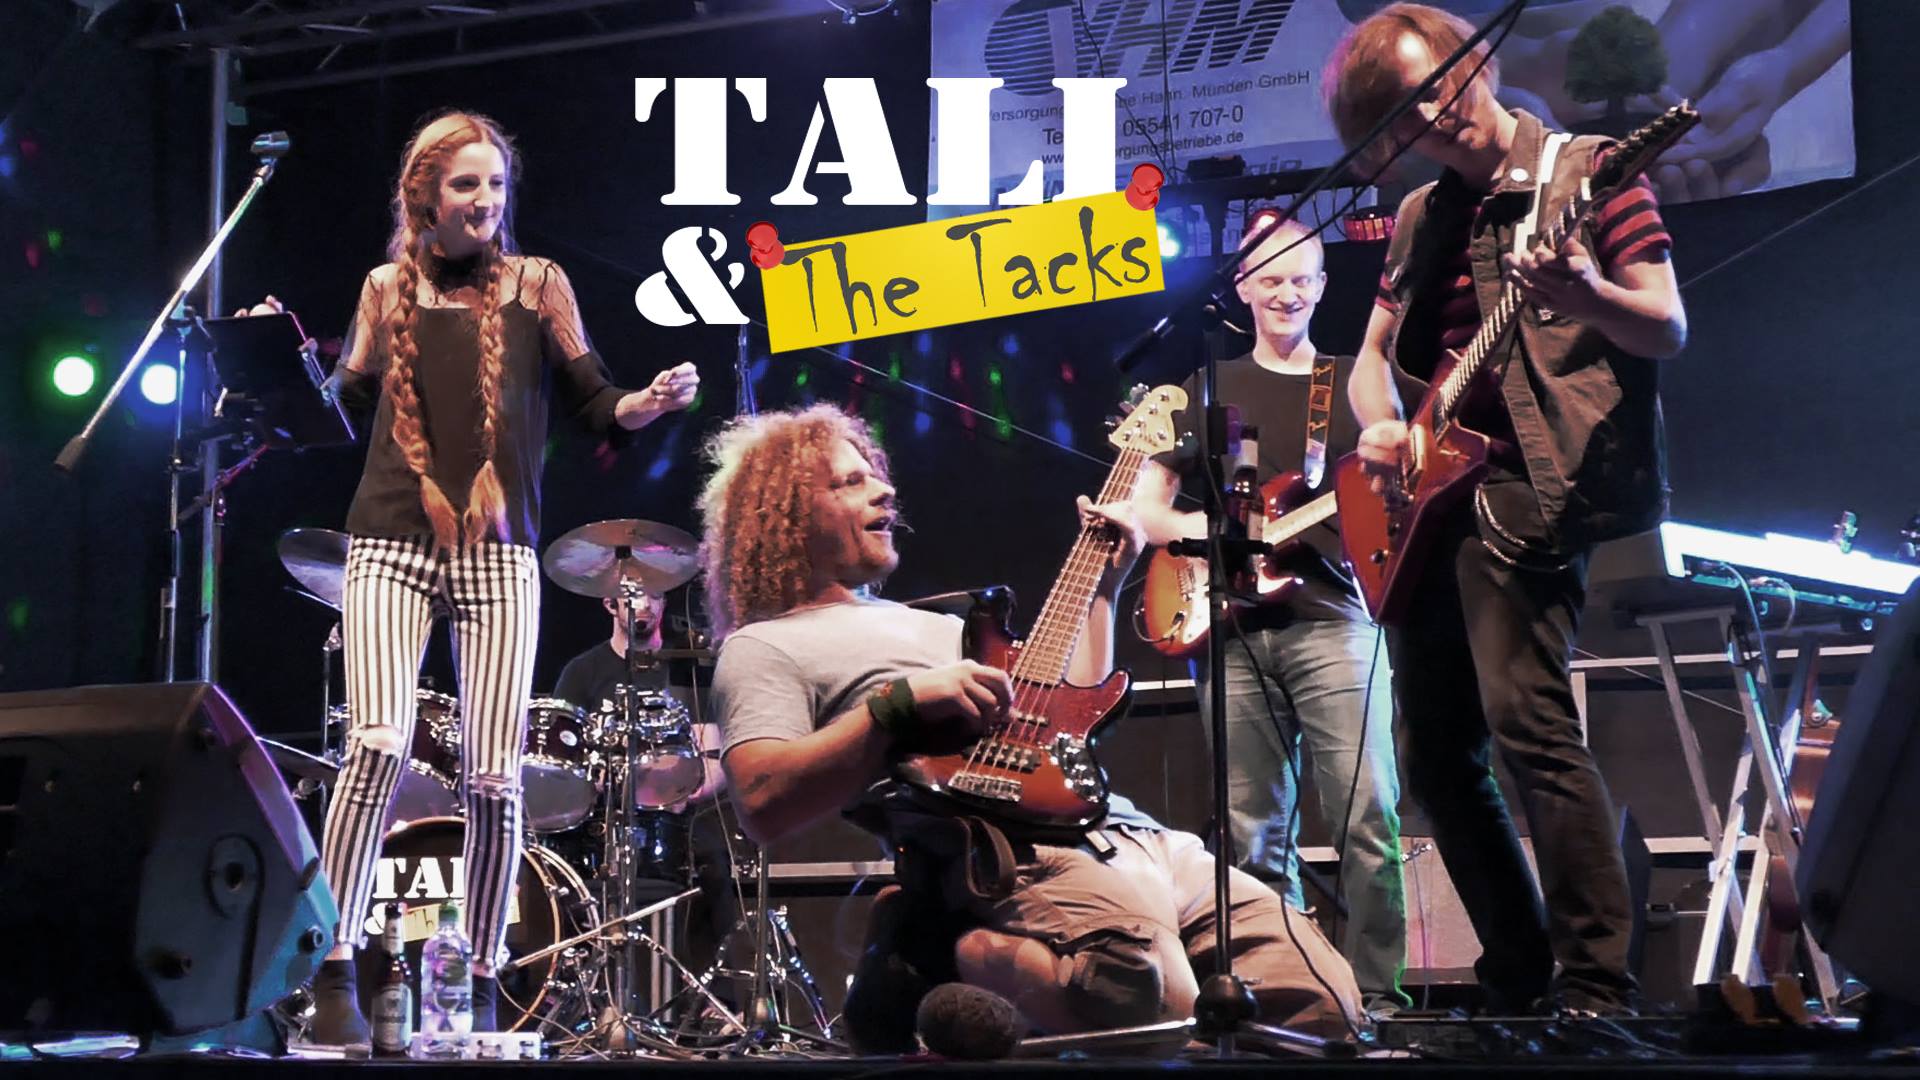 Tali and the Tacks